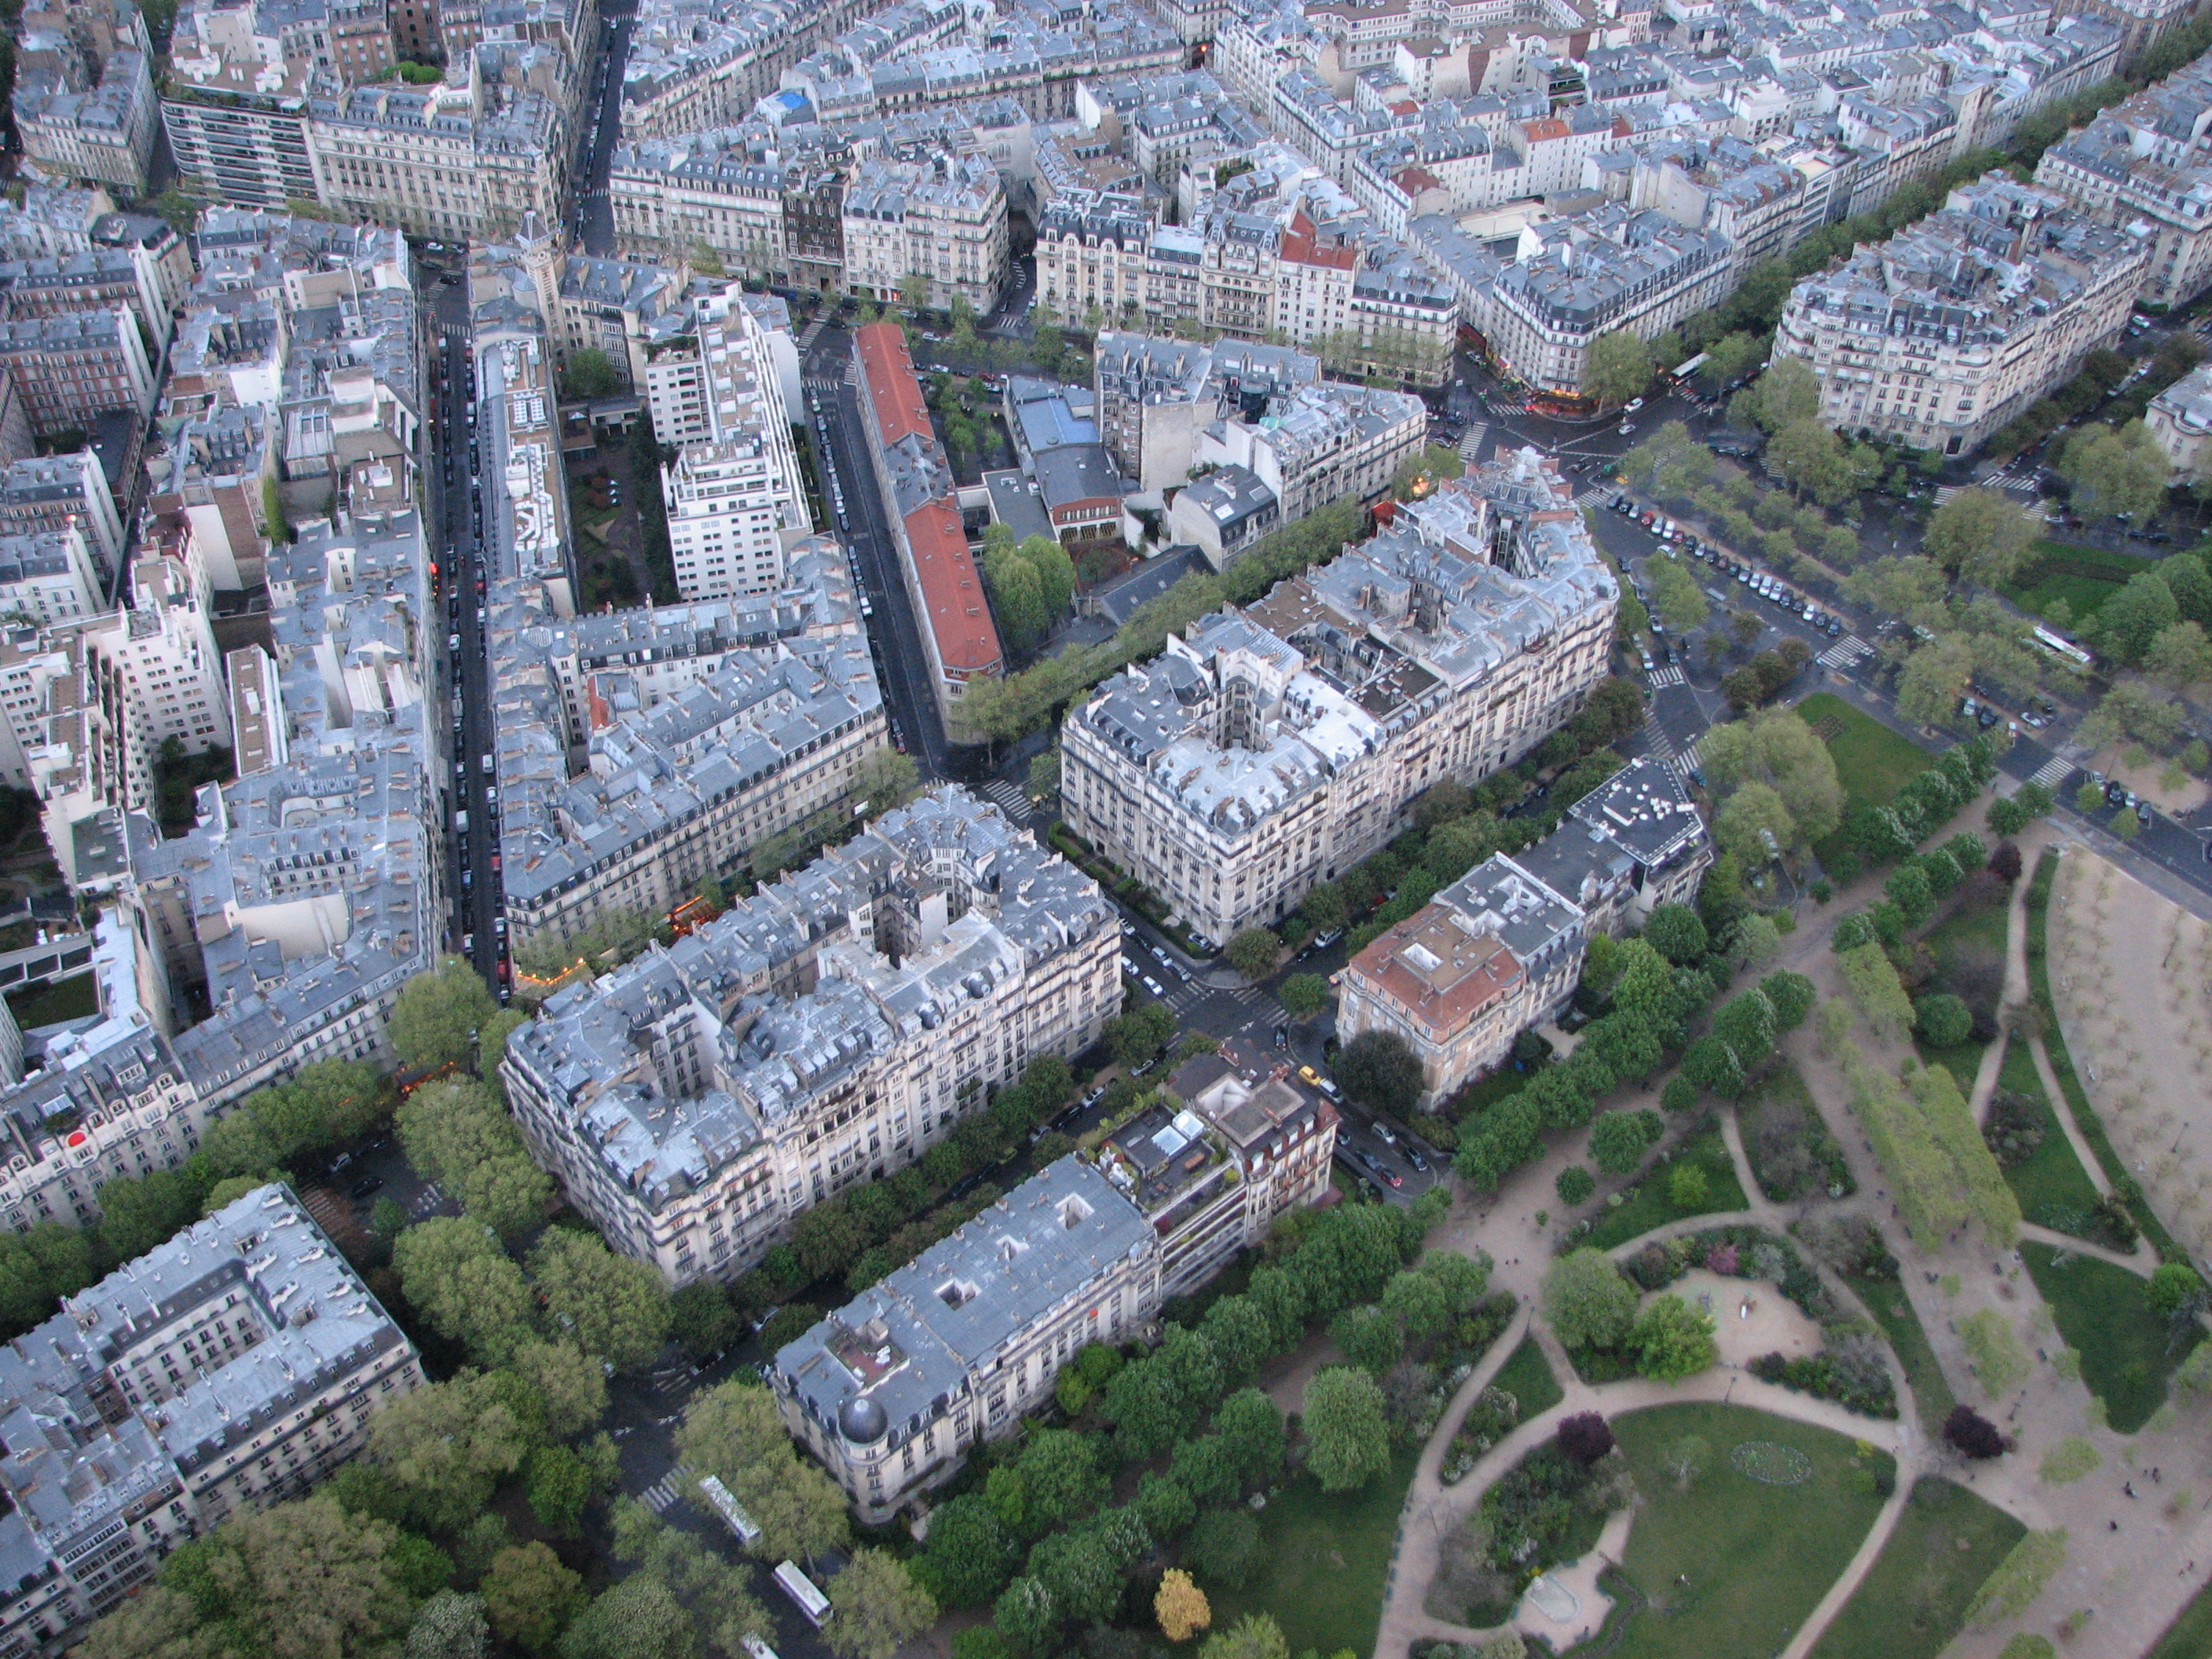 Paris, France (April 2012)